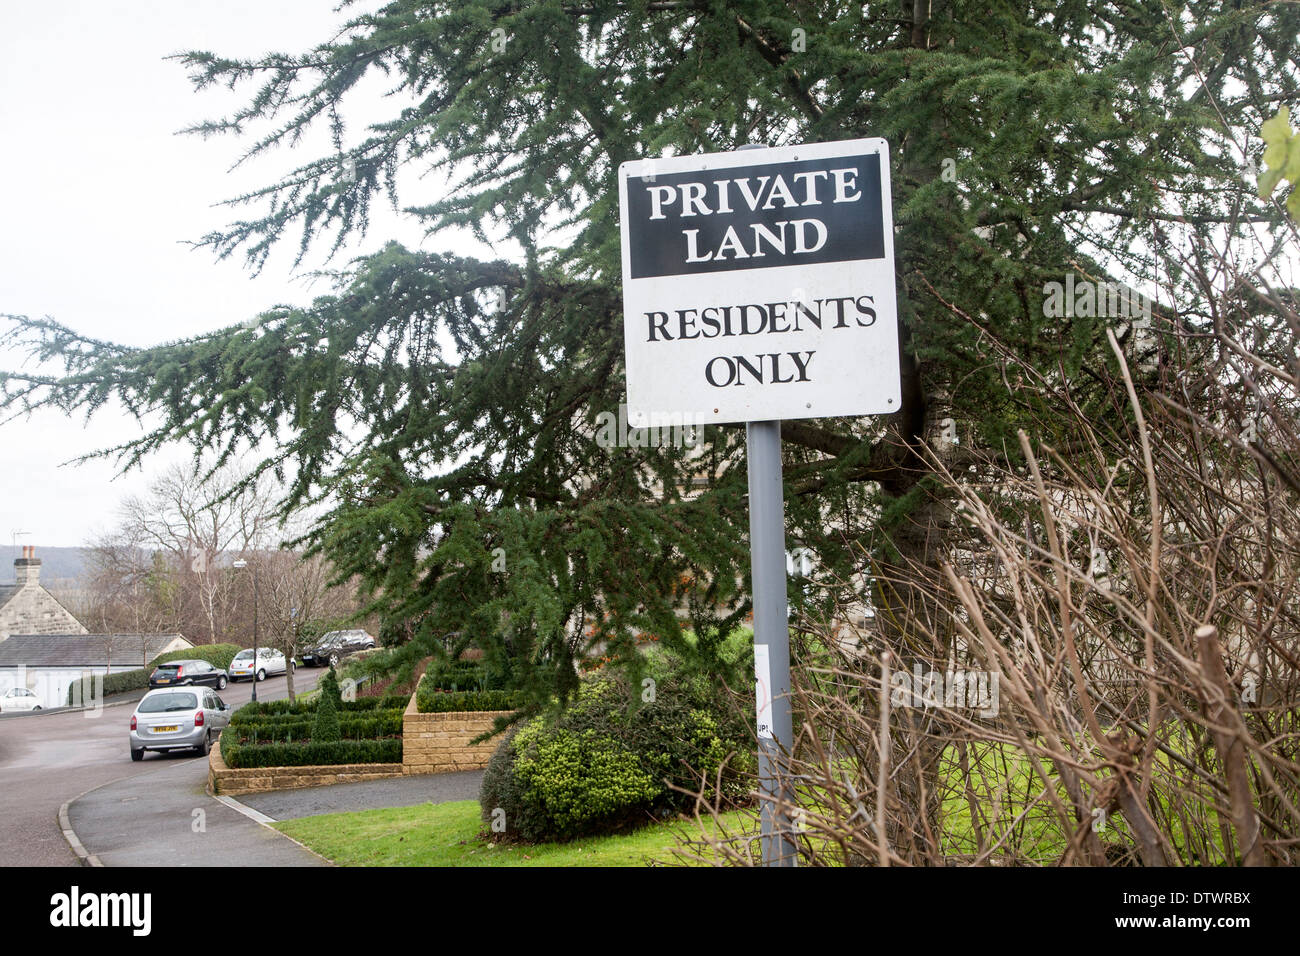 Signer pour les terres privées aux résidents d'accéder uniquement sur le développement du logement résidentiel suburbain, Bath, Angleterre Banque D'Images